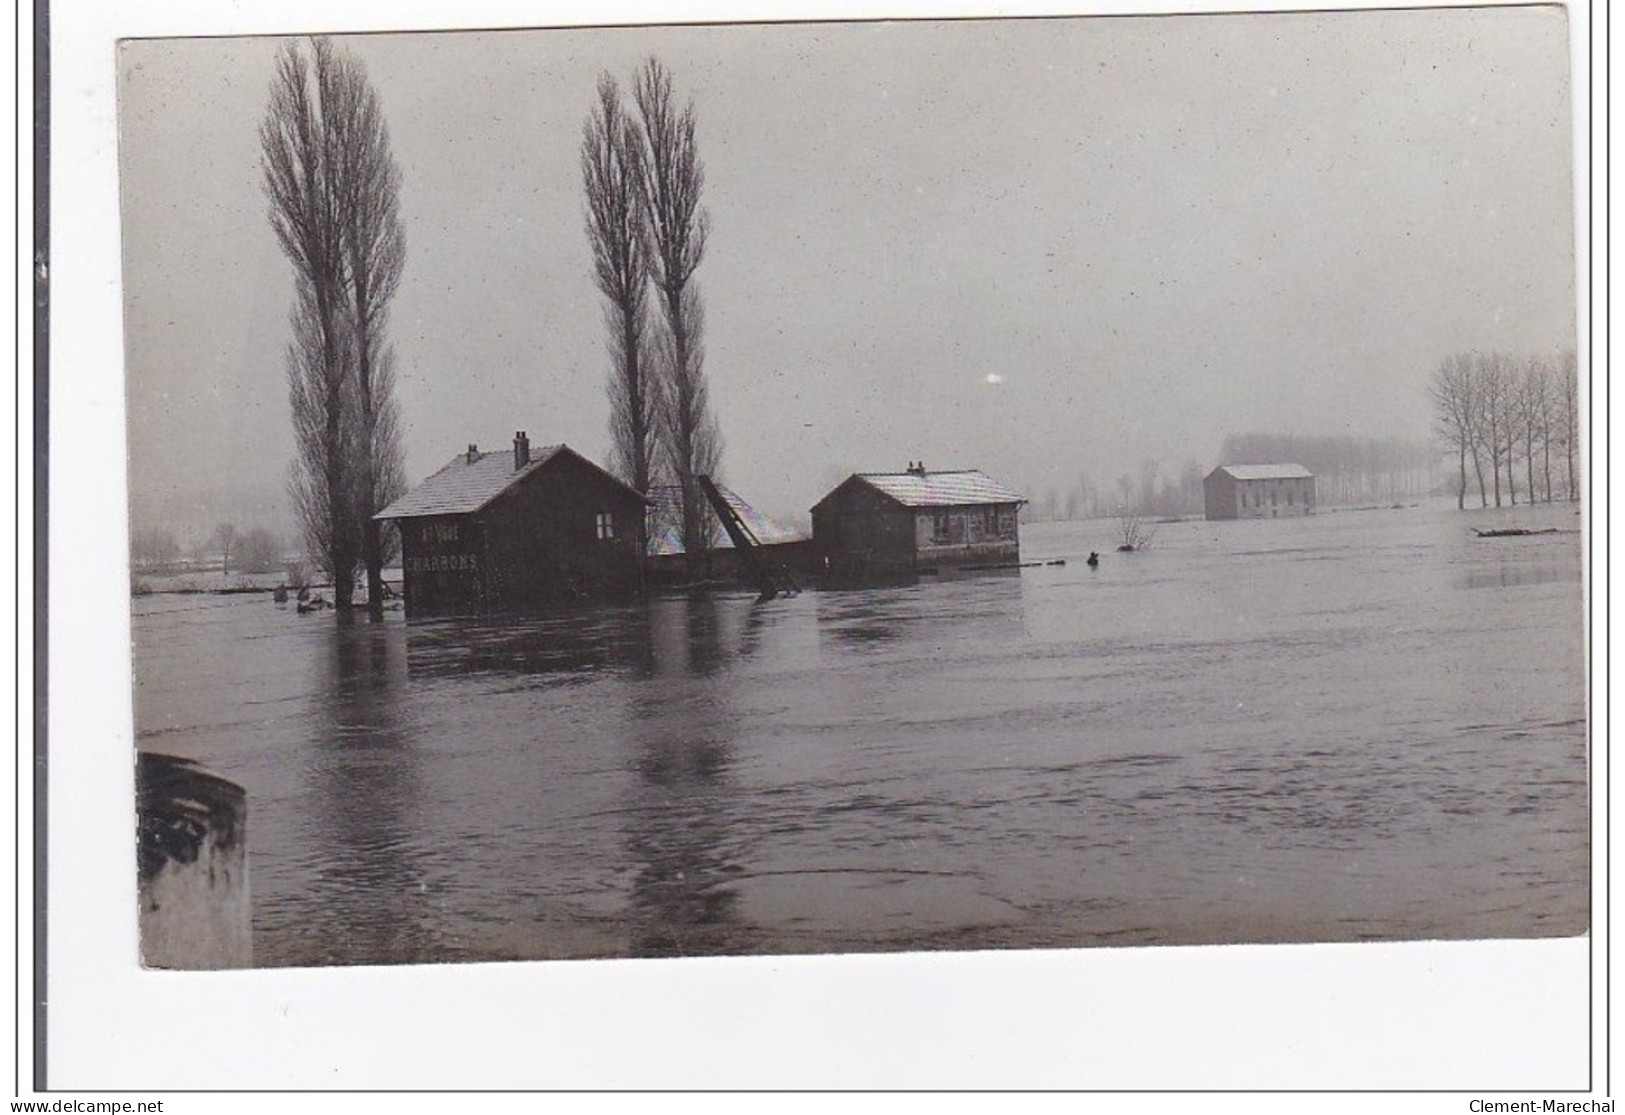 MEAUX : innondation (26 cpa photo) - tres bon etat